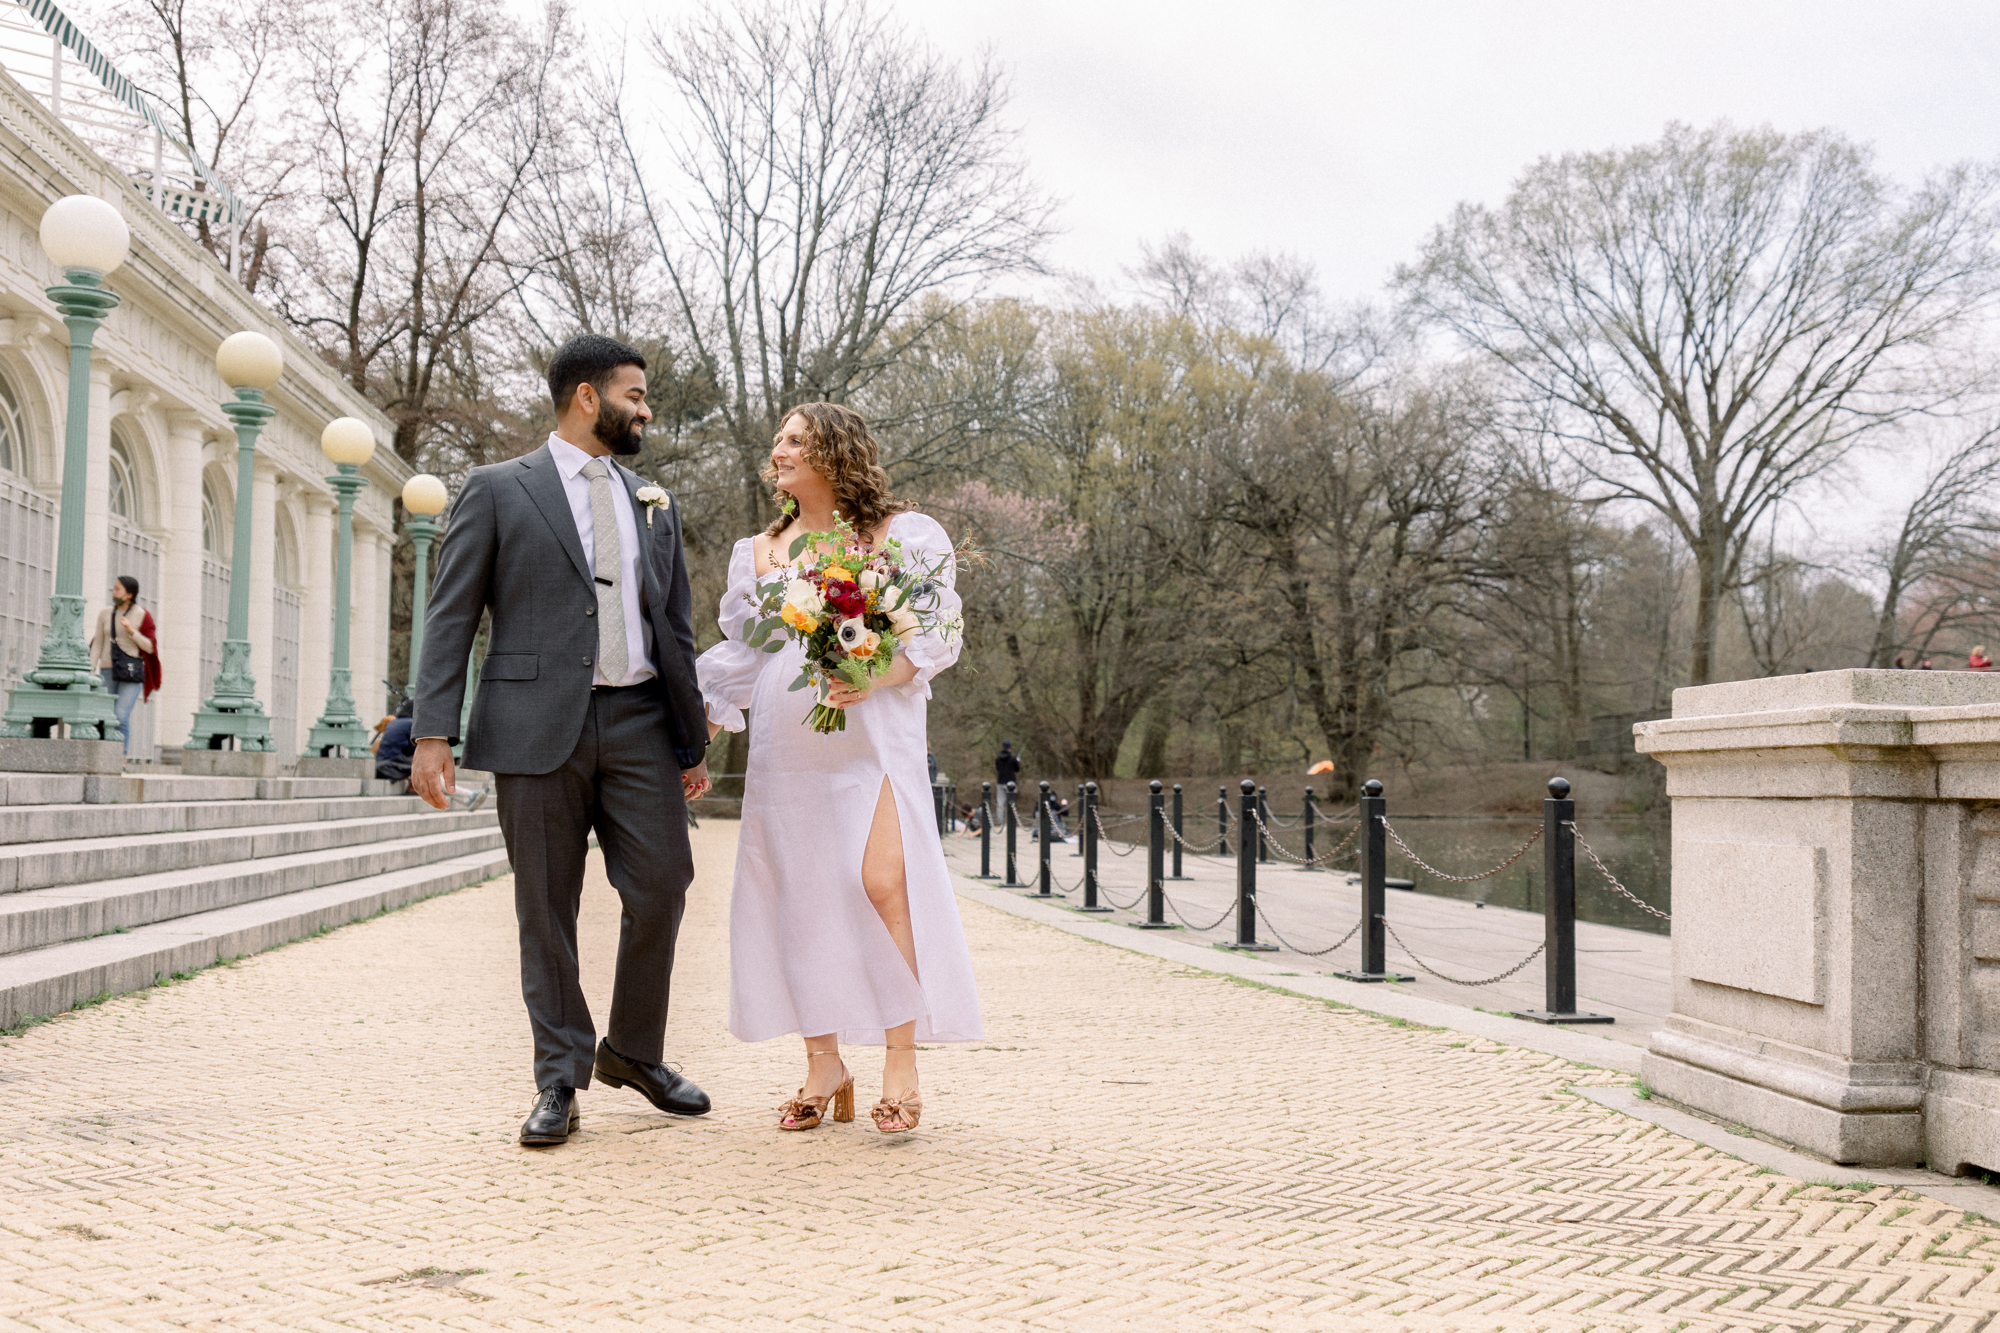 Dreamy Prospect Park Wedding Photos with Springtime Cherry Blossoms